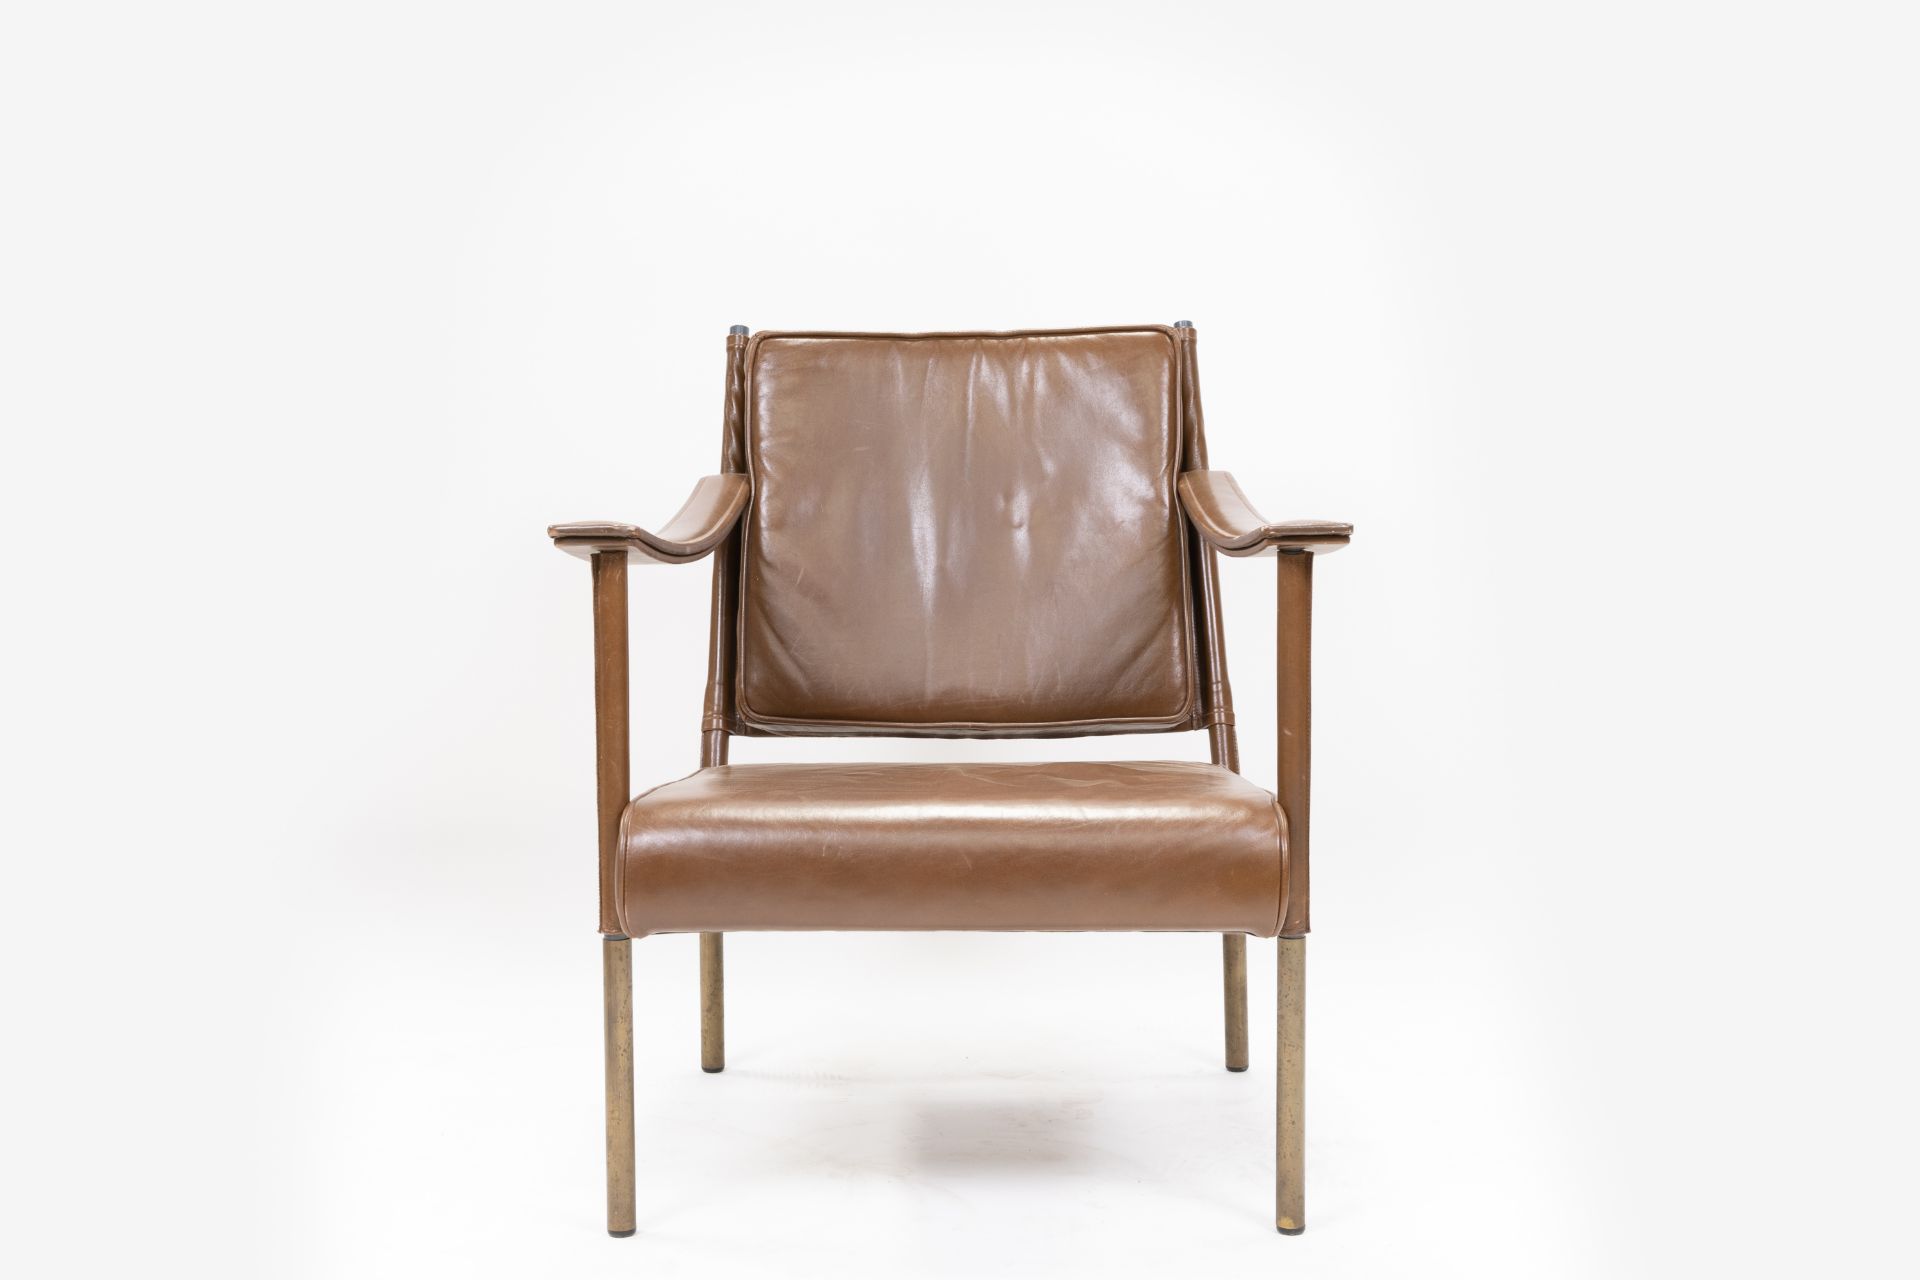 Soane Britain Crillon Chair - Image 2 of 8